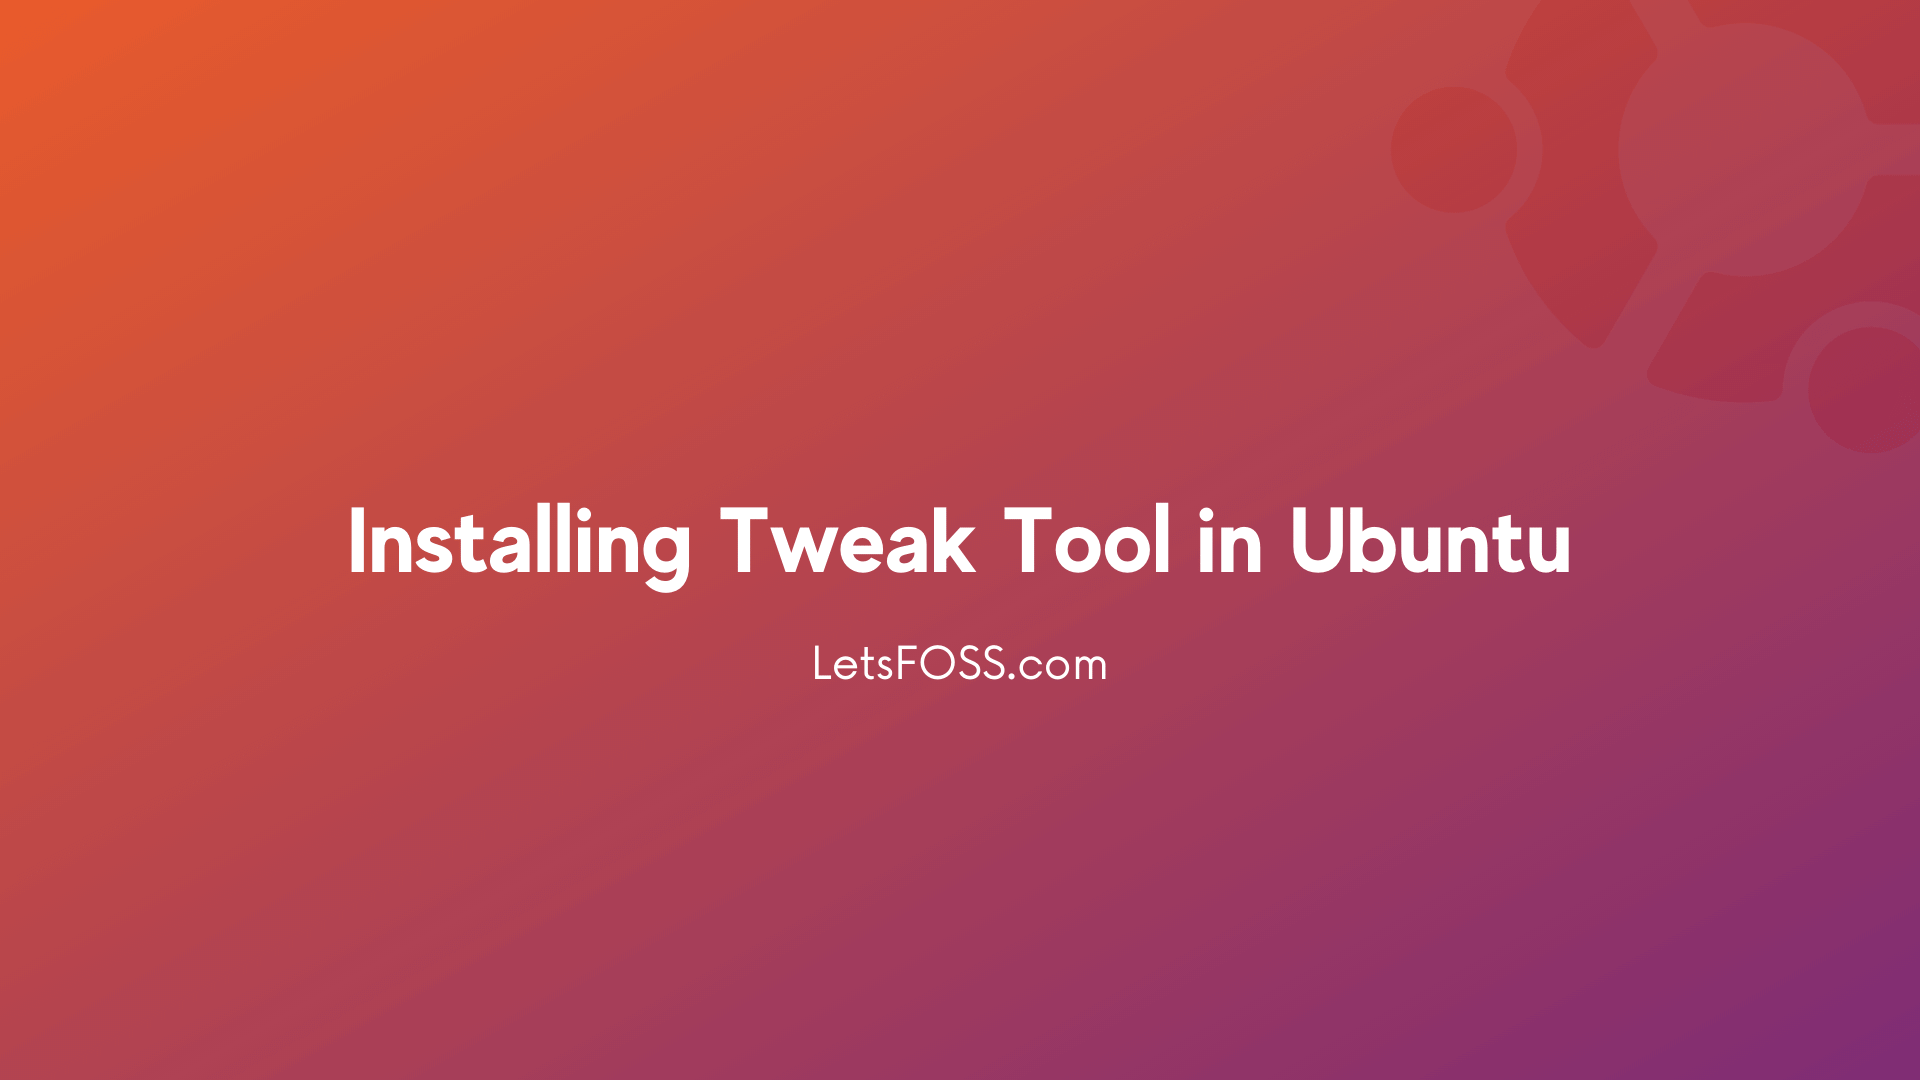 Installing Tweak Tool in Ubuntu